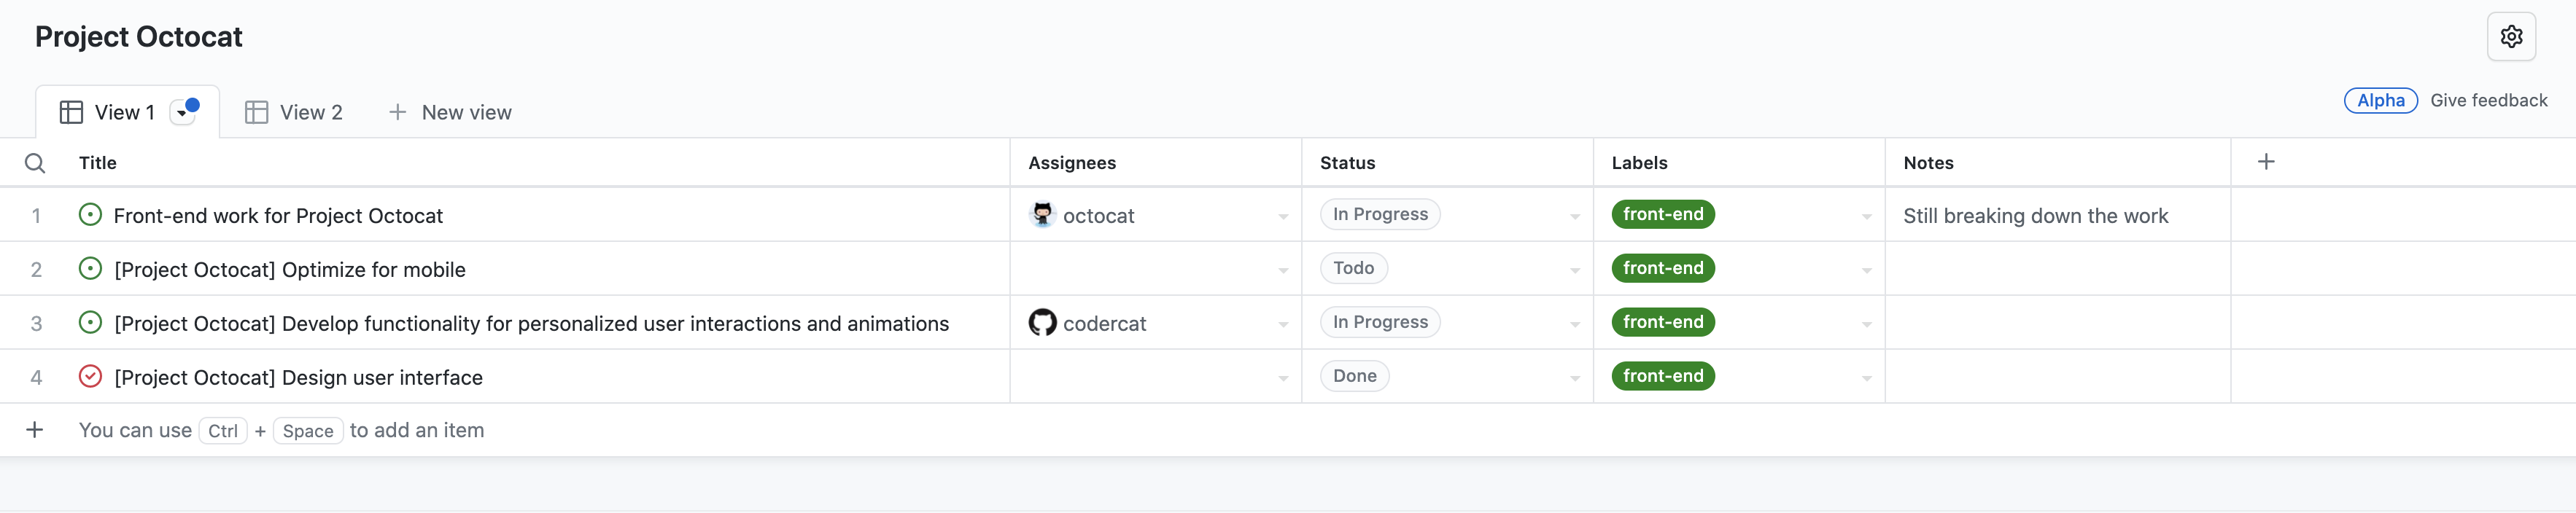 Capture d’écran de la vue tableau du projet « Project Octocat », contenant une liste de problèmes, avec les colonnes « Titre », « Destinataires », « État », « Étiquettes » et « Notes ».